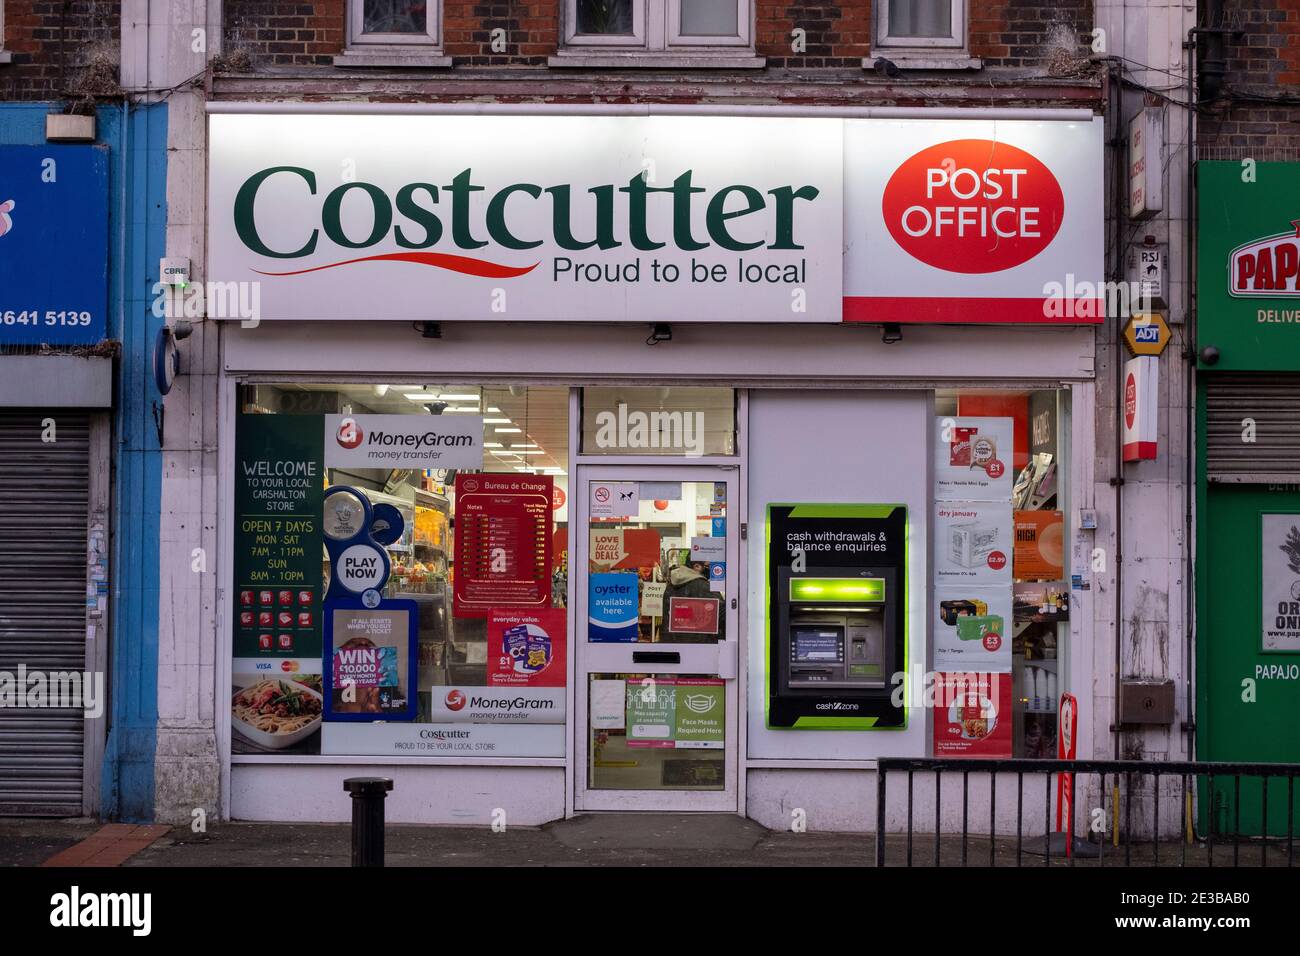 Sutton, Surrey, Royaume-Uni. 18 janvier 2021. Le bureau de poste et la boutique de Costcutter, ouverts à Wrythe Lane, St Helier, pendant le confinement de Covid-19 en janvier 2021. Crédit: Malcolm Park/Alay. Banque D'Images